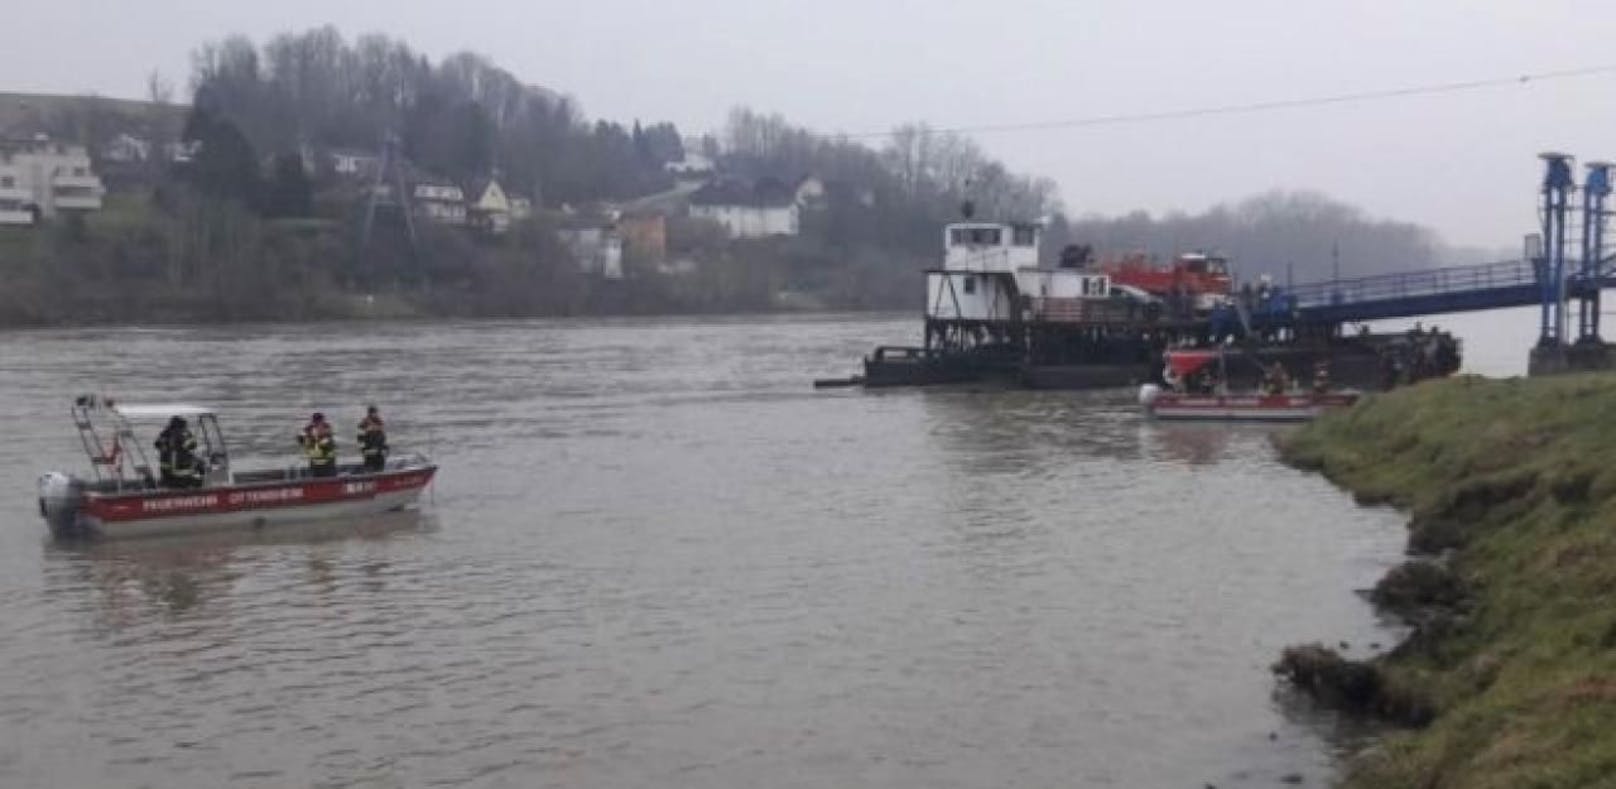 Auto stürzt bei Rollfähre in die Donau